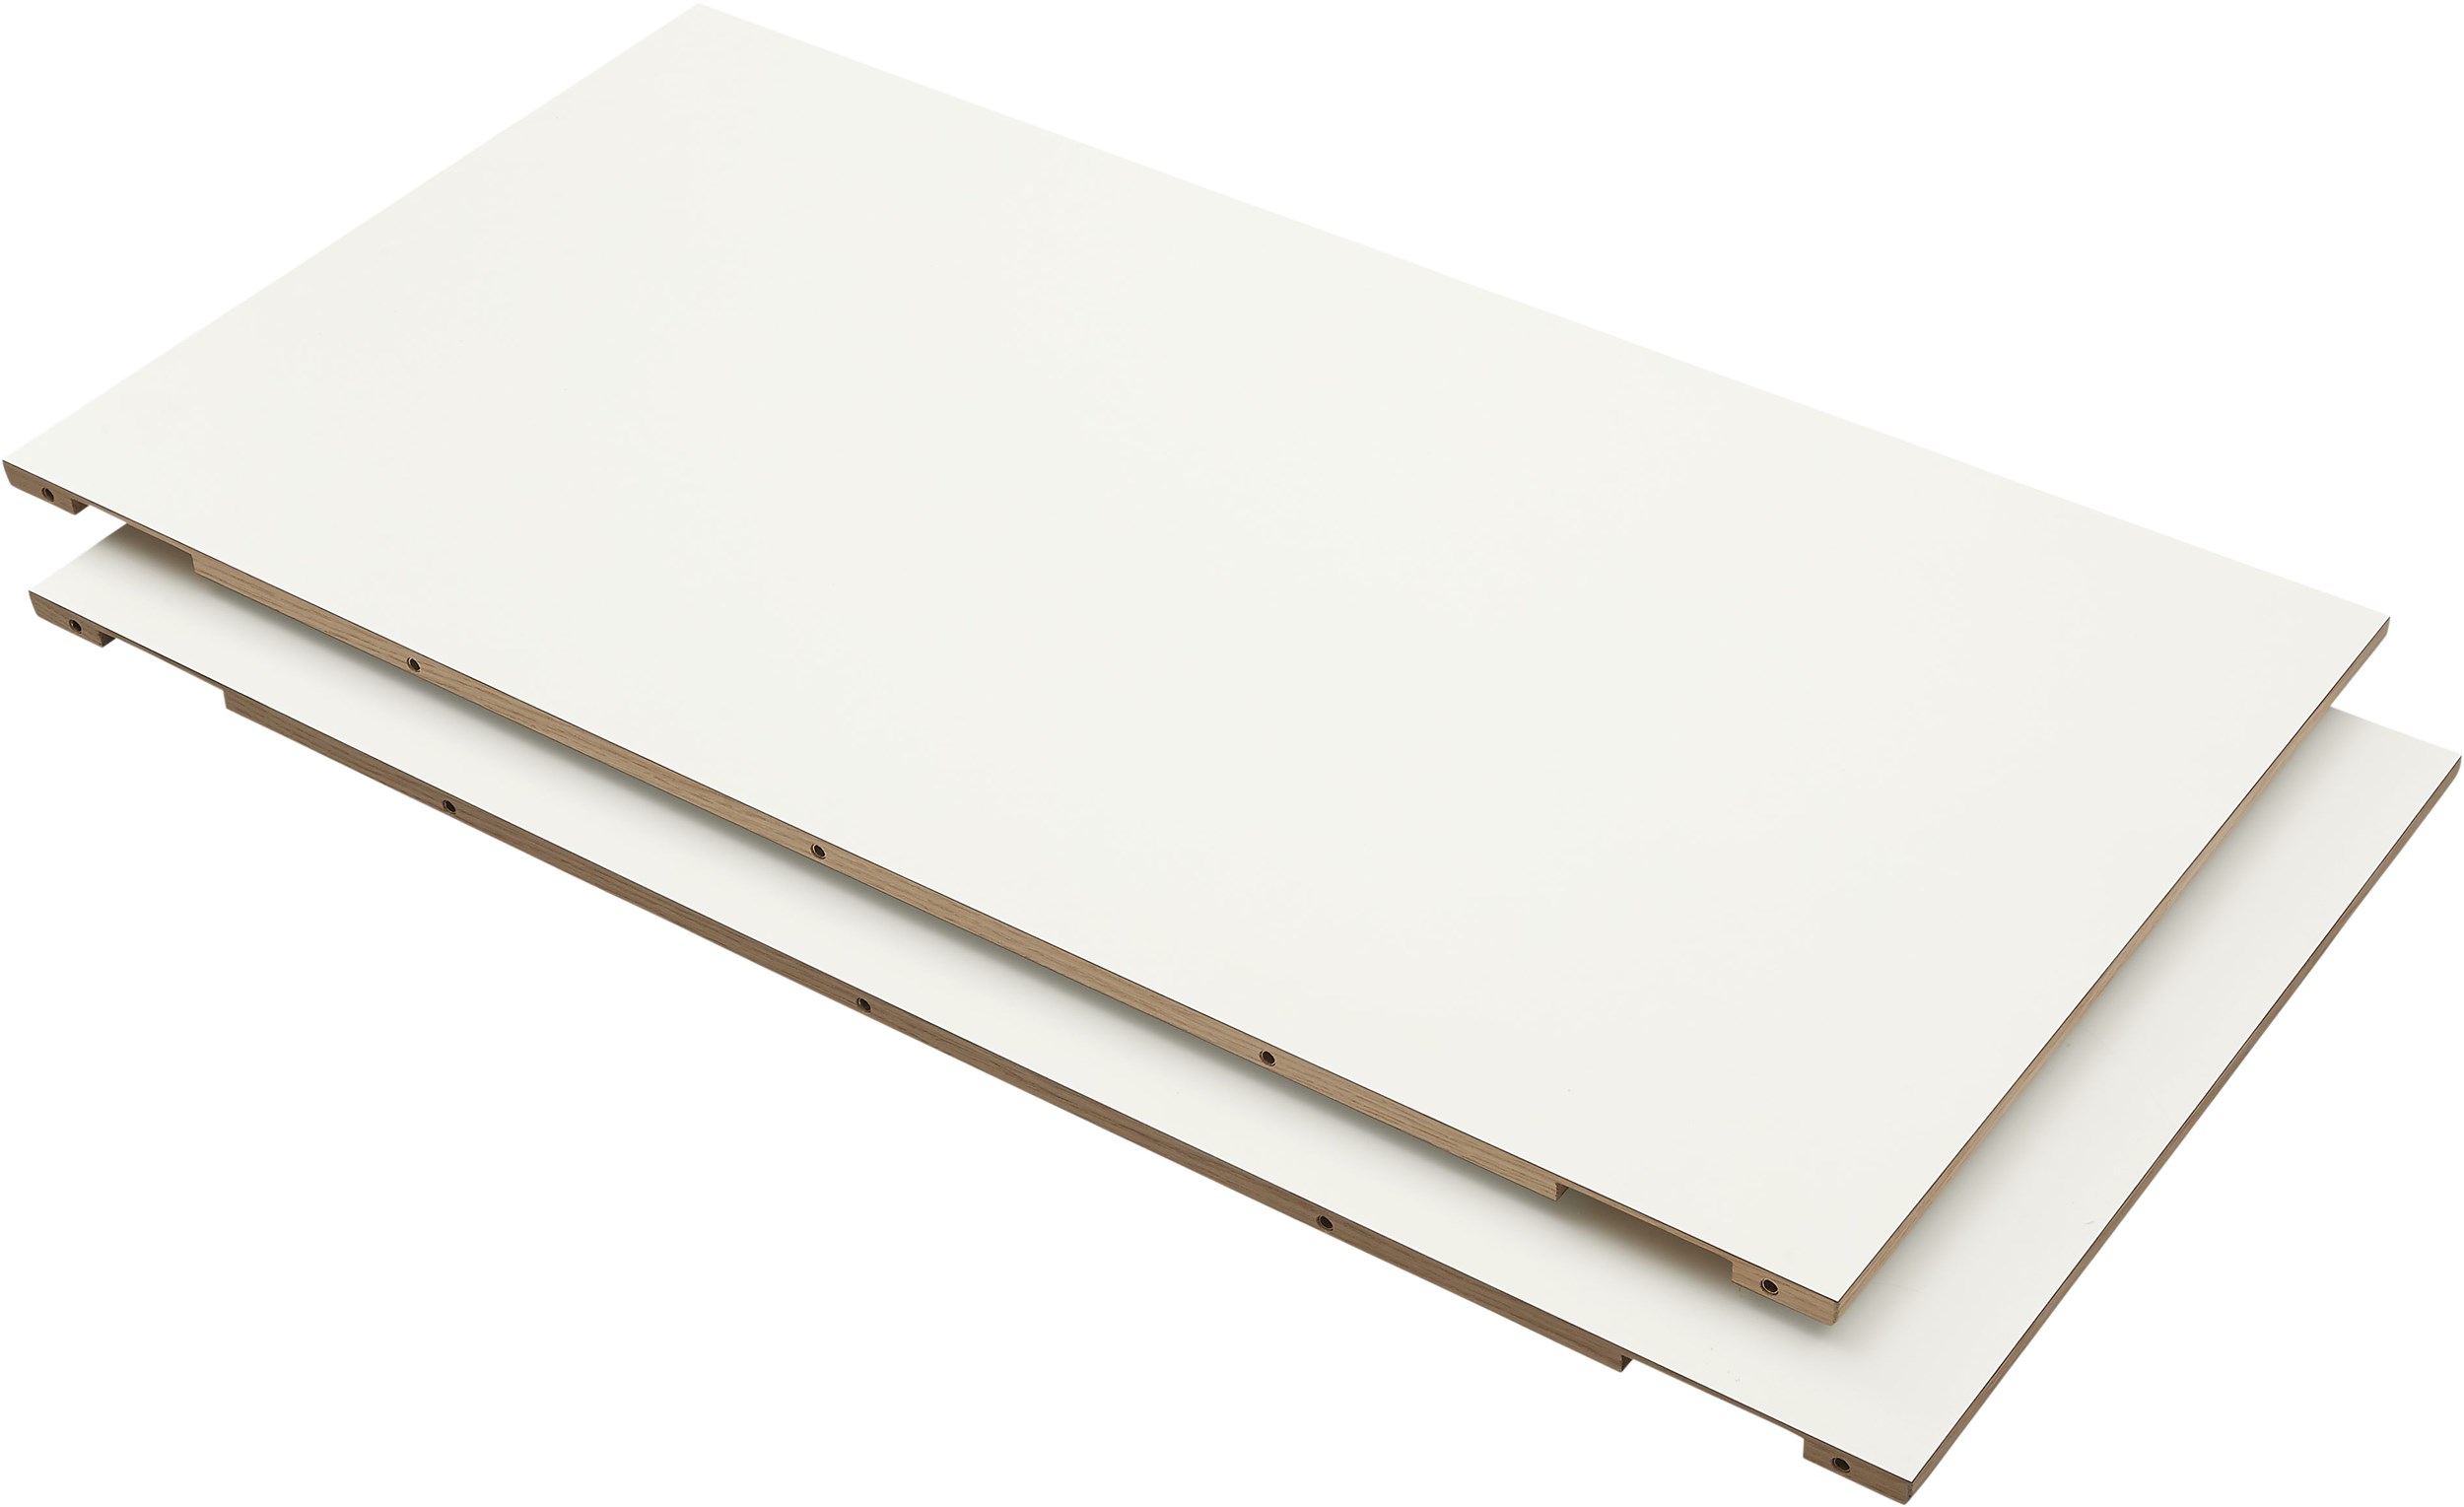 Edge Iläggsplatta 49 x 95 cm - 101 White HPL laminat, kant i vitpigmenterad mattlackad ek och 2 st